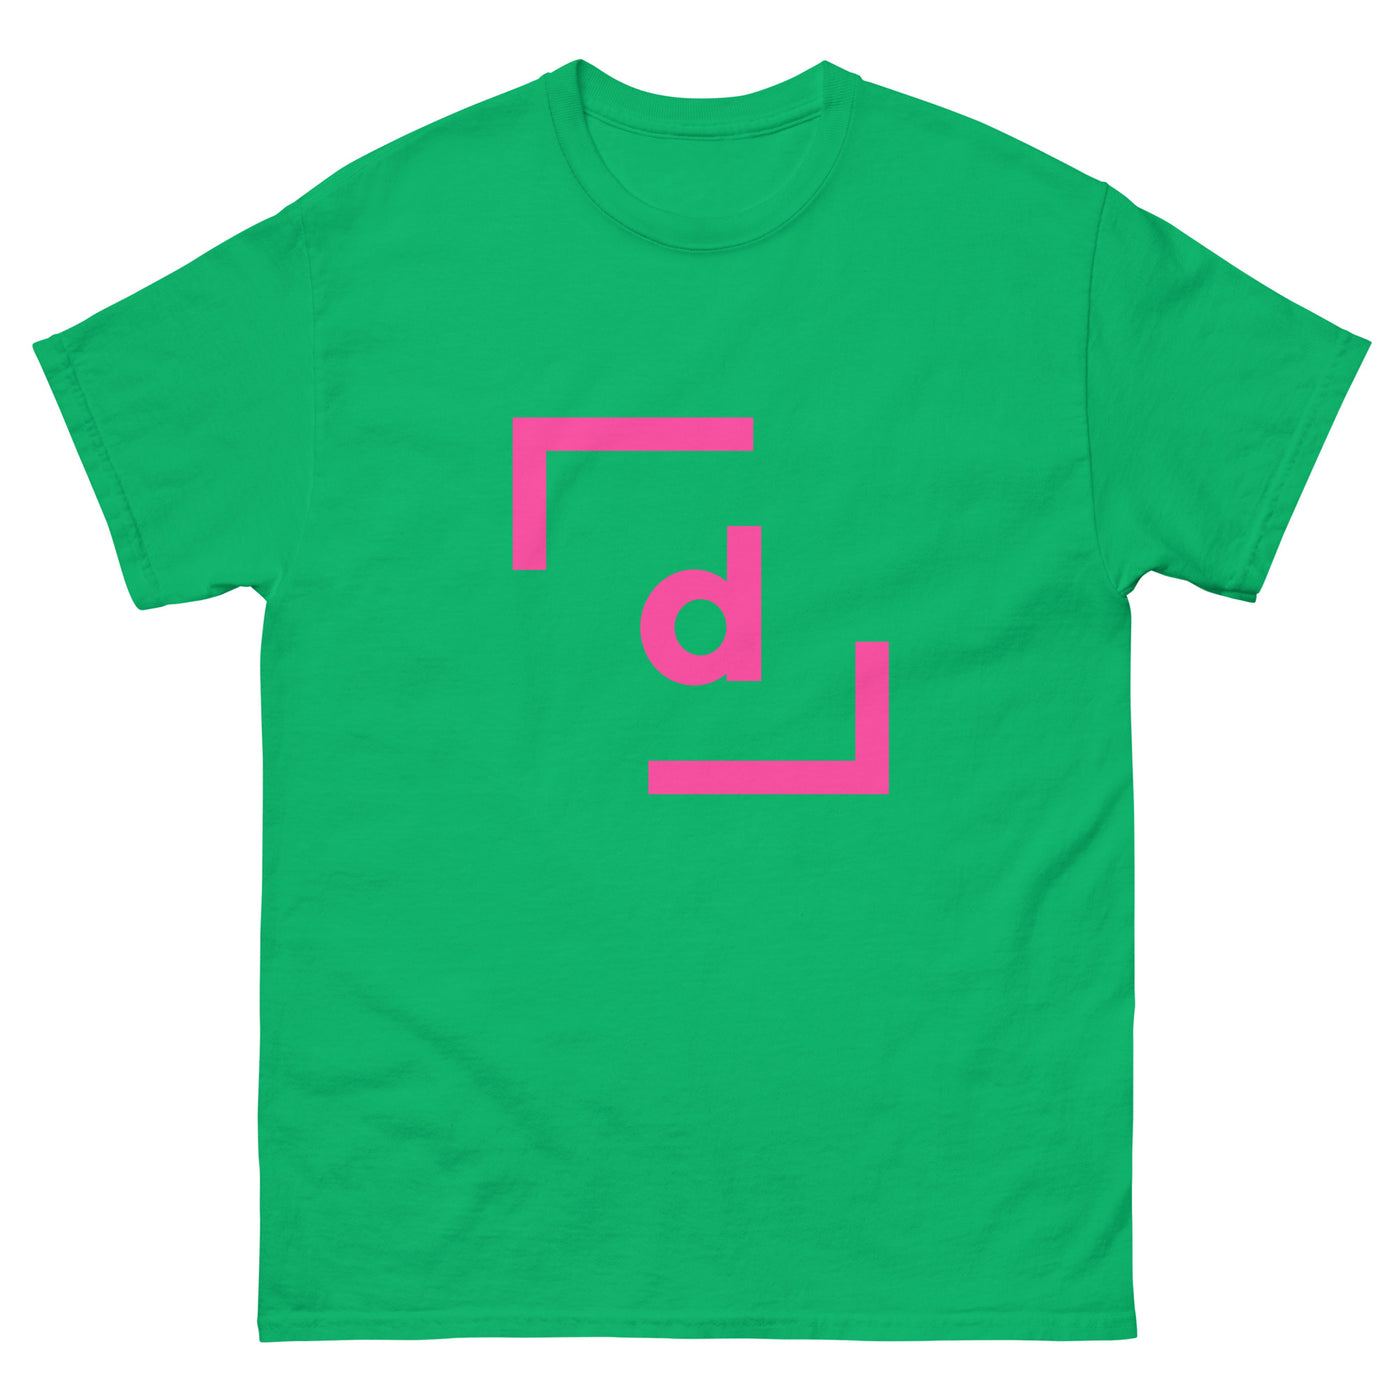 D’ Basic Tee (Men) - Pink Logo